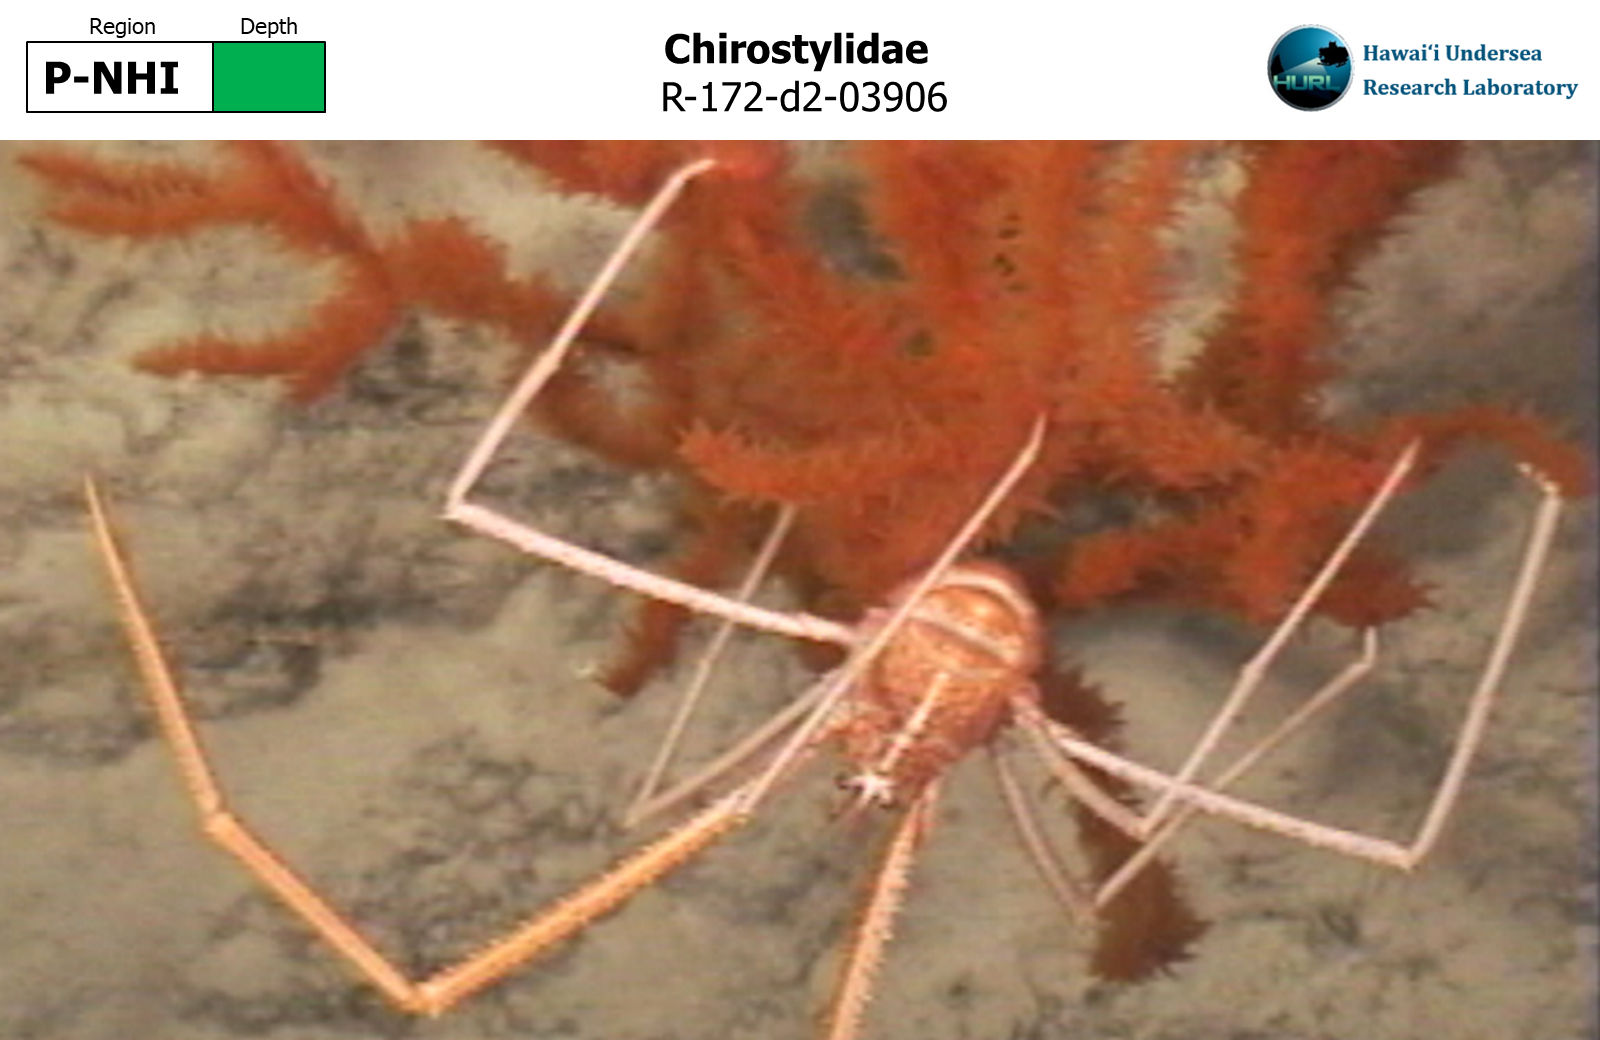 Chirostylidae